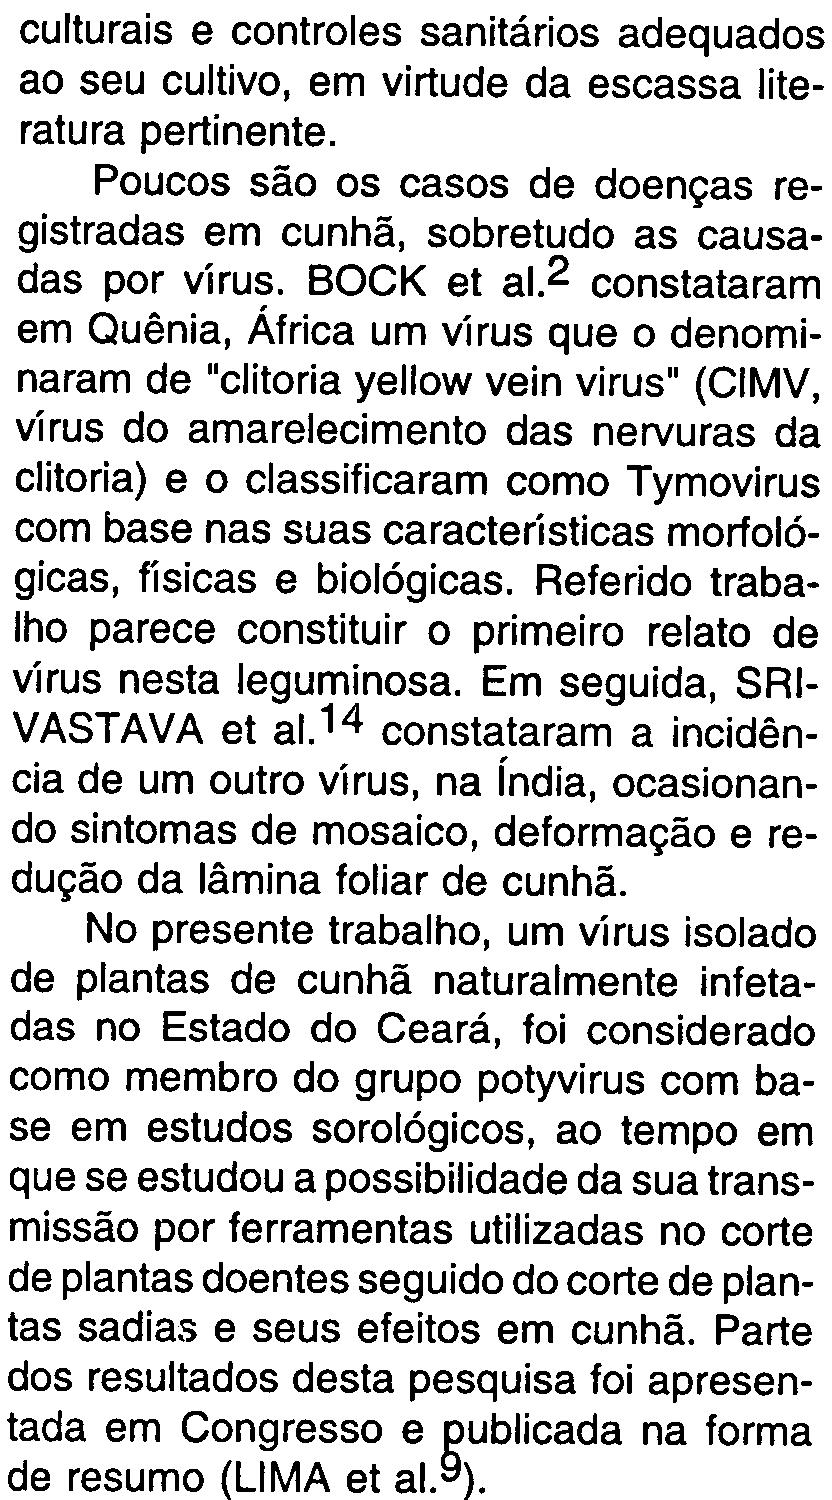 2 constataram em Quênia, África um vírus que o denominaram de "clitoria yellow vein virus" (CIMV, vírus do amarelecimento das nervuras da clitoria) e o classificaram como Tymovirus com base nas suas